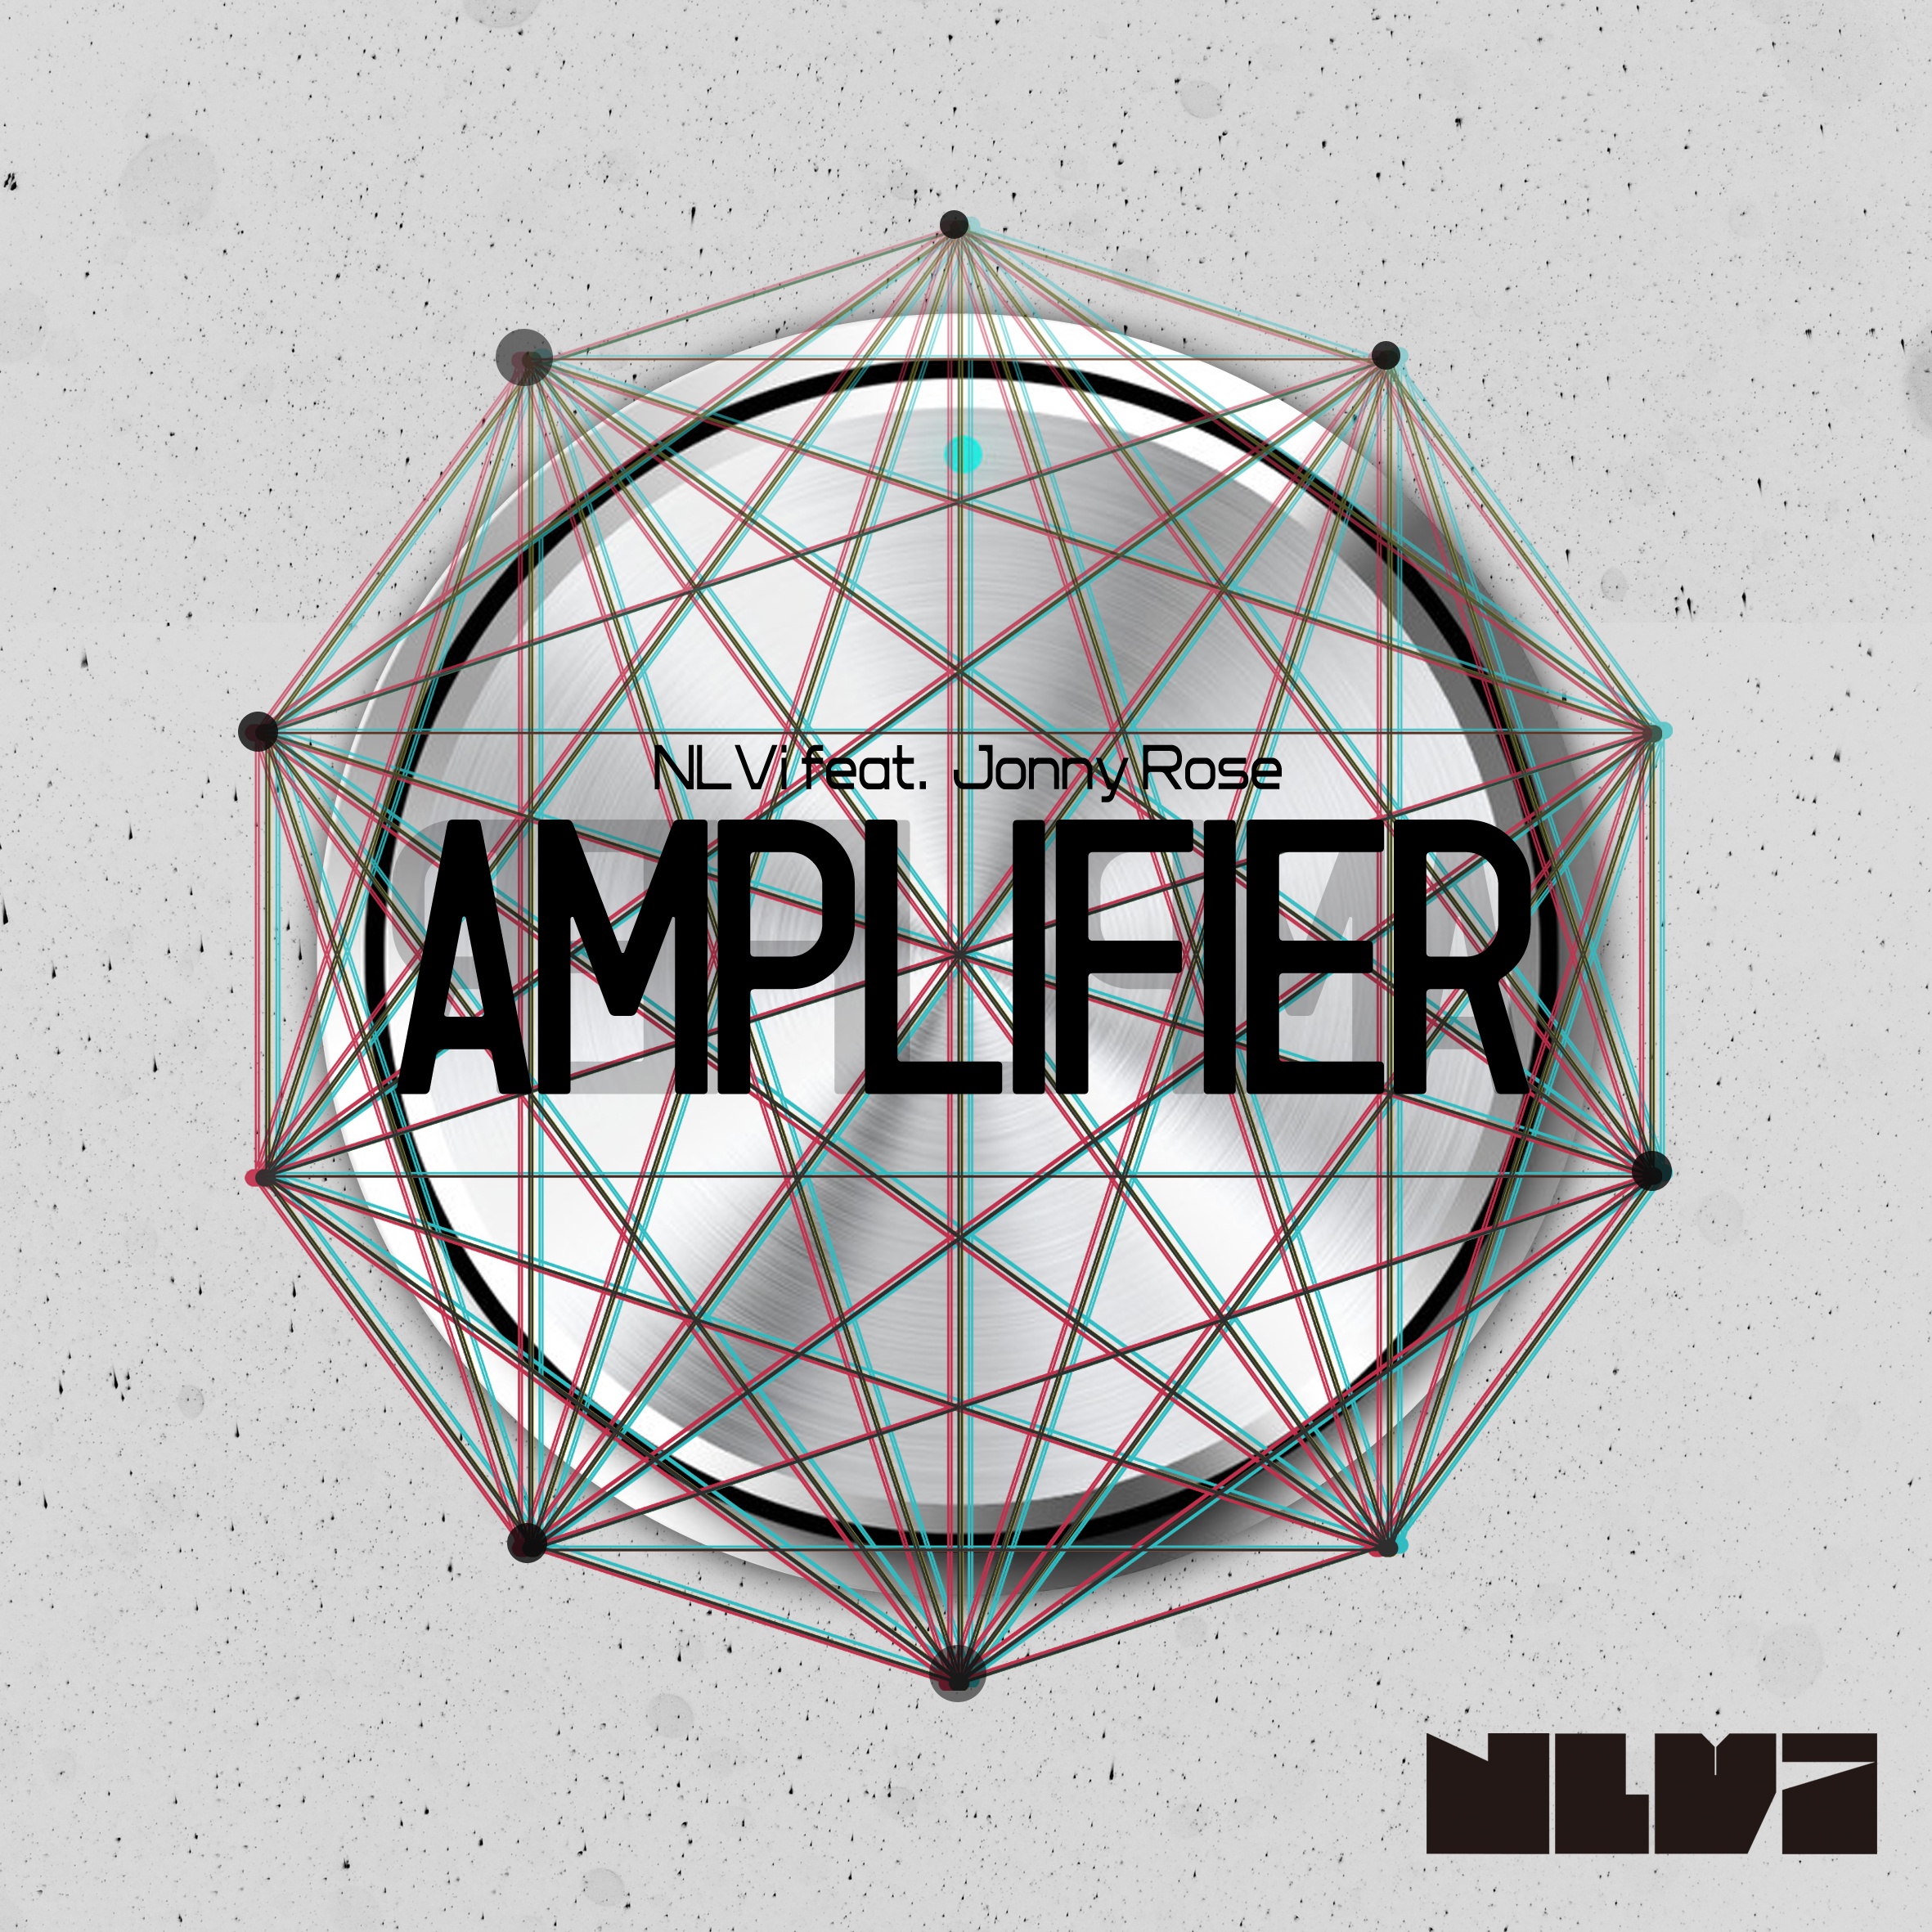 Amplifier (Paddy Duke Club Mix)